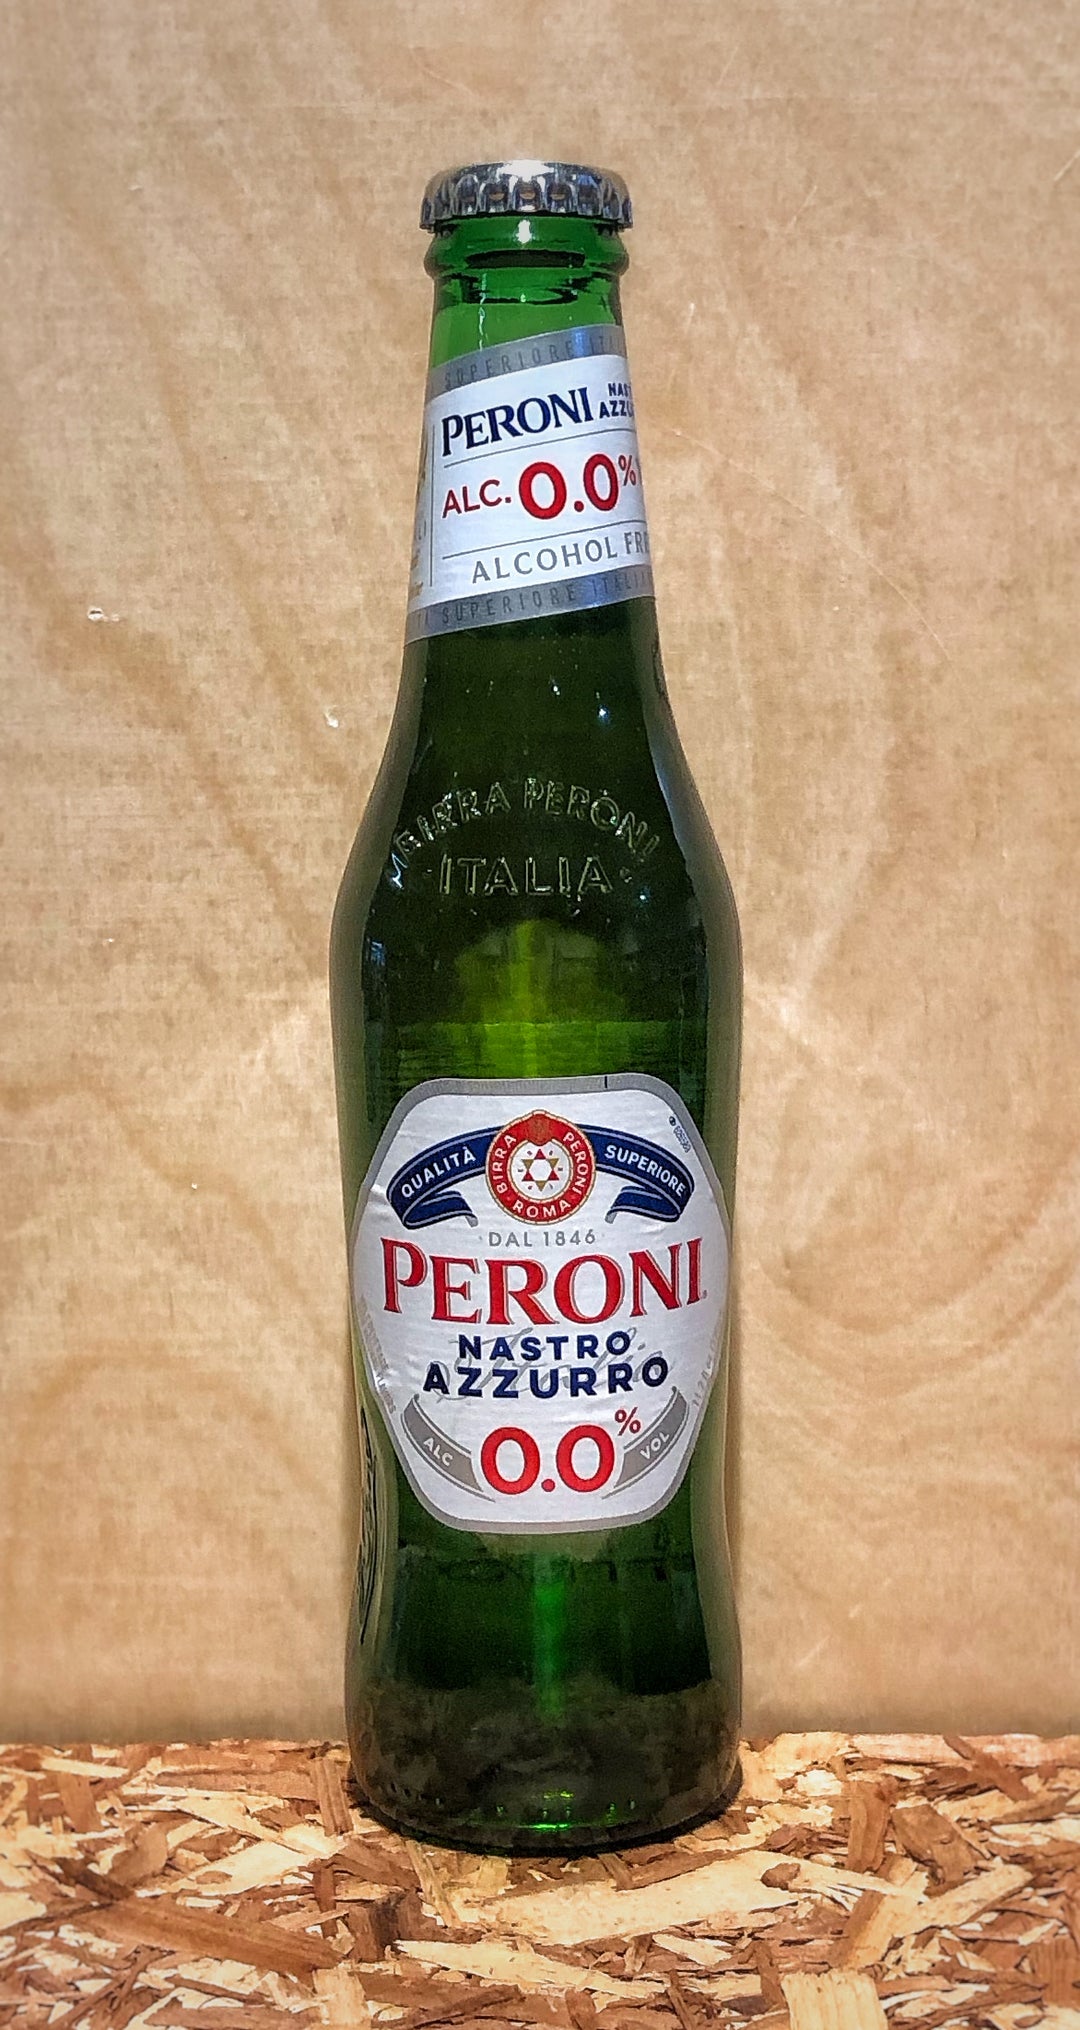 Peroni Nastro Azzuro 0.0% (Rome, Italy)